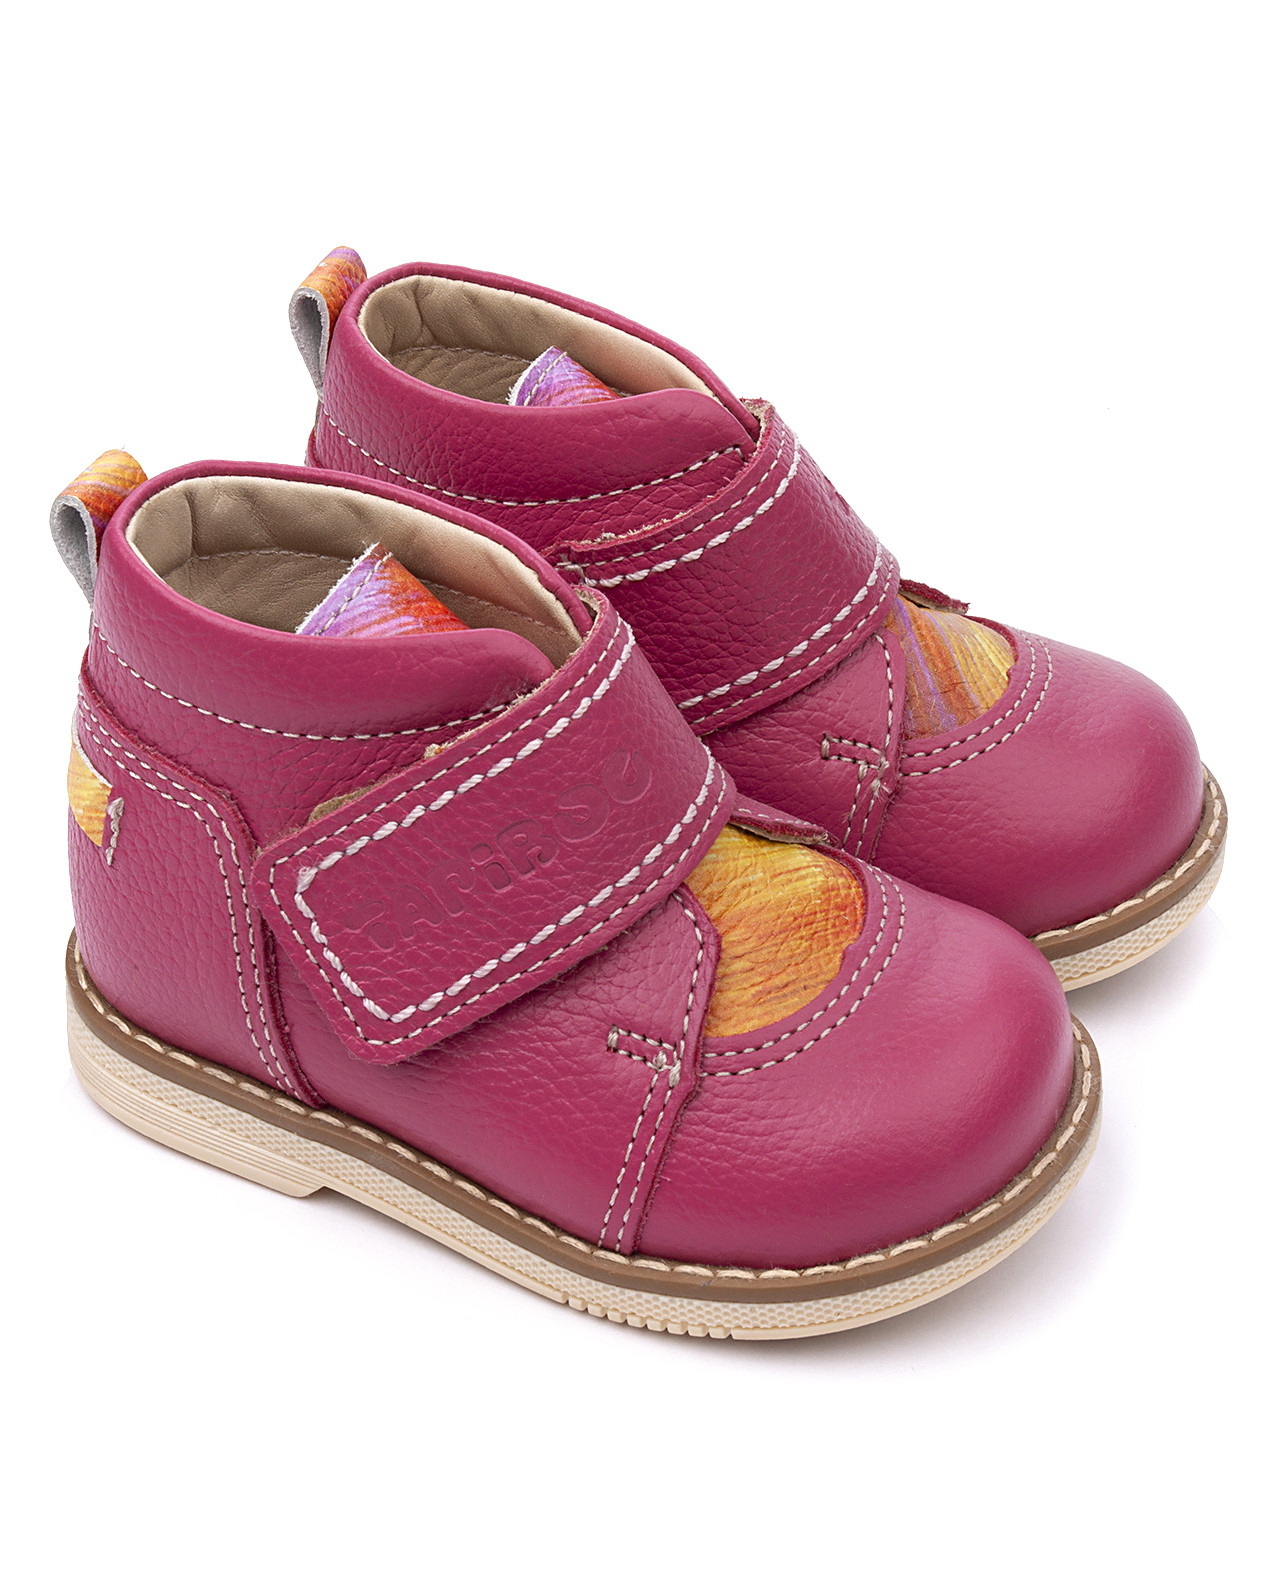 Ботинки детские Tapiboo ФУКСИЯ радуга (76488, 25) ботинки детские tapiboo фуксия радуга 76488 25